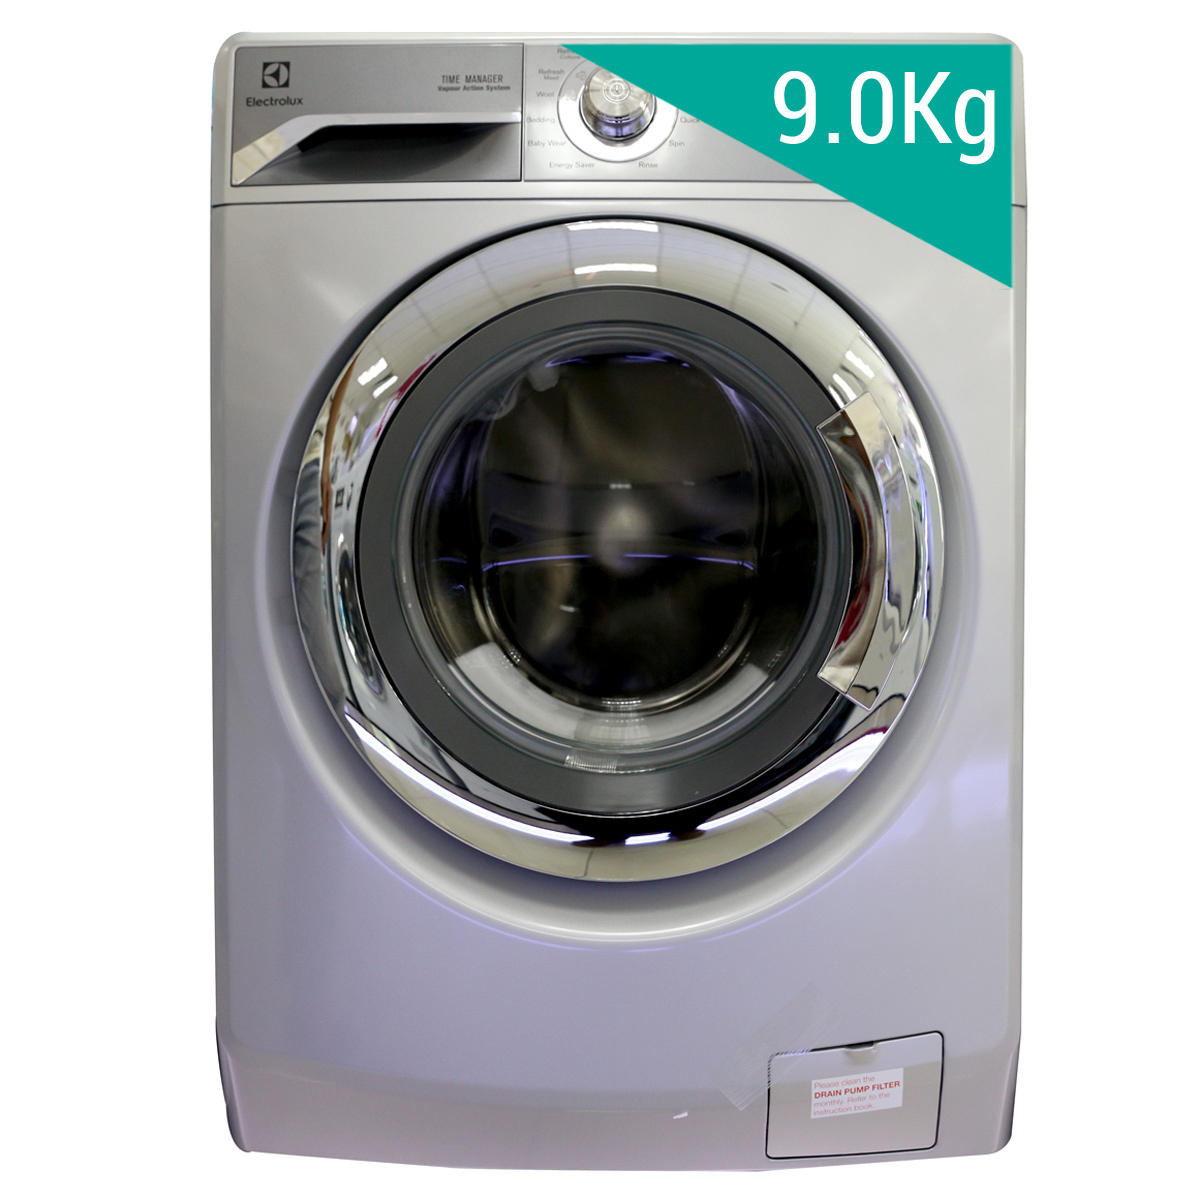 Máy giặt Electrolux 9kg lnverter cửa trước - 107942253